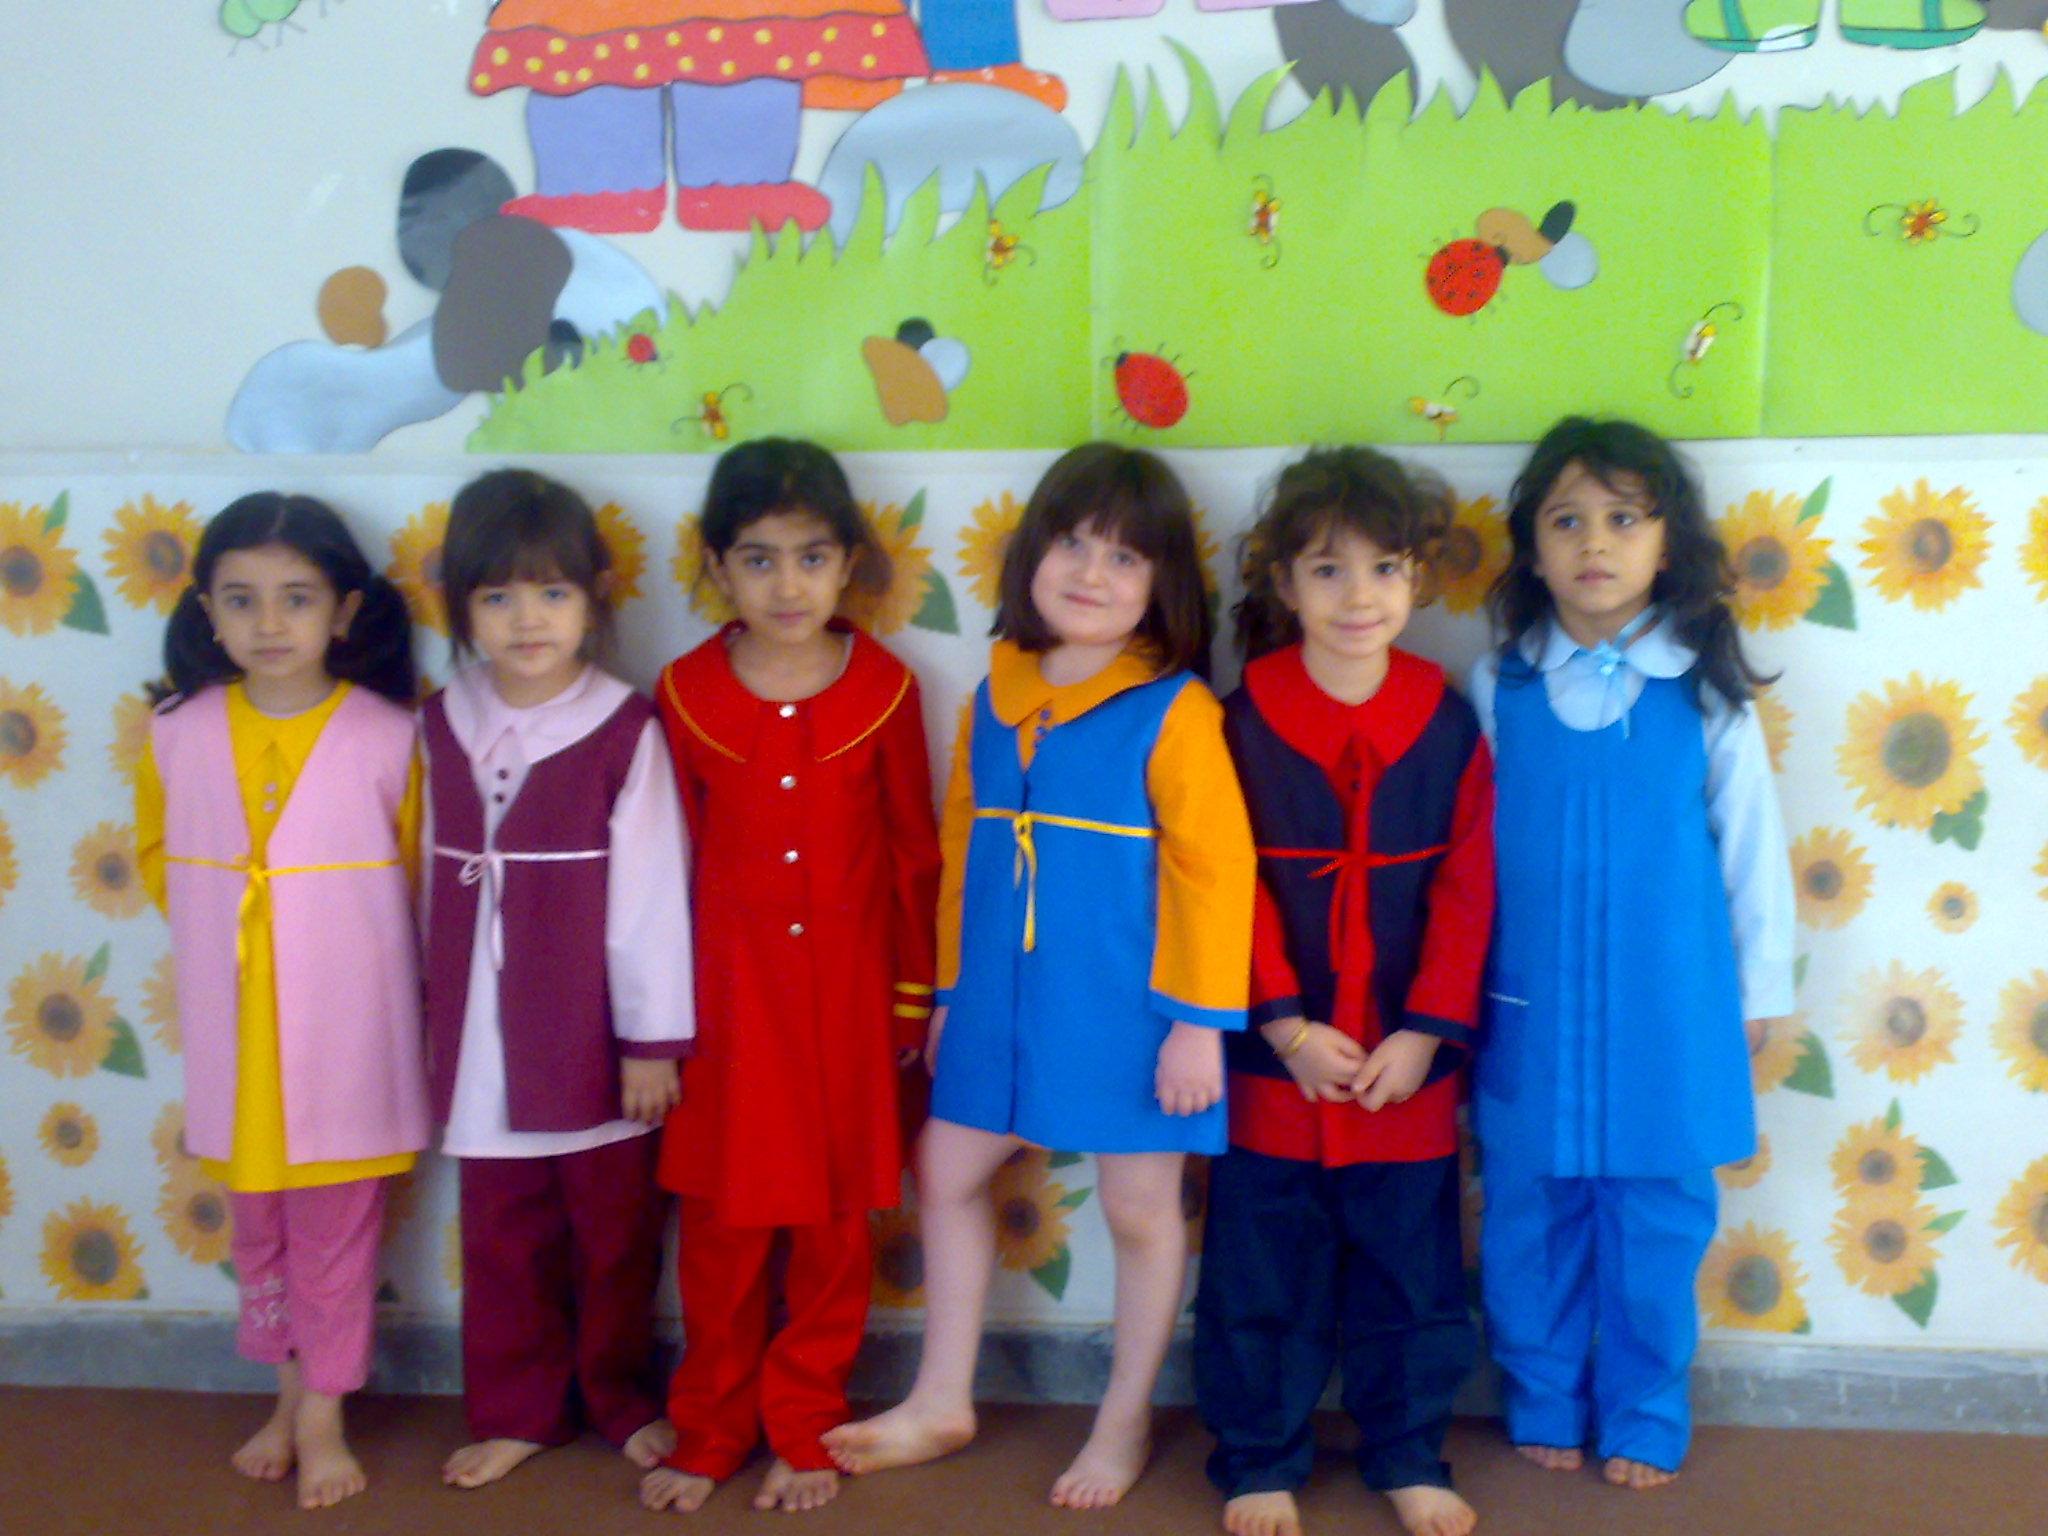 روانشناسی رنگ در لباس های فرم کودکان